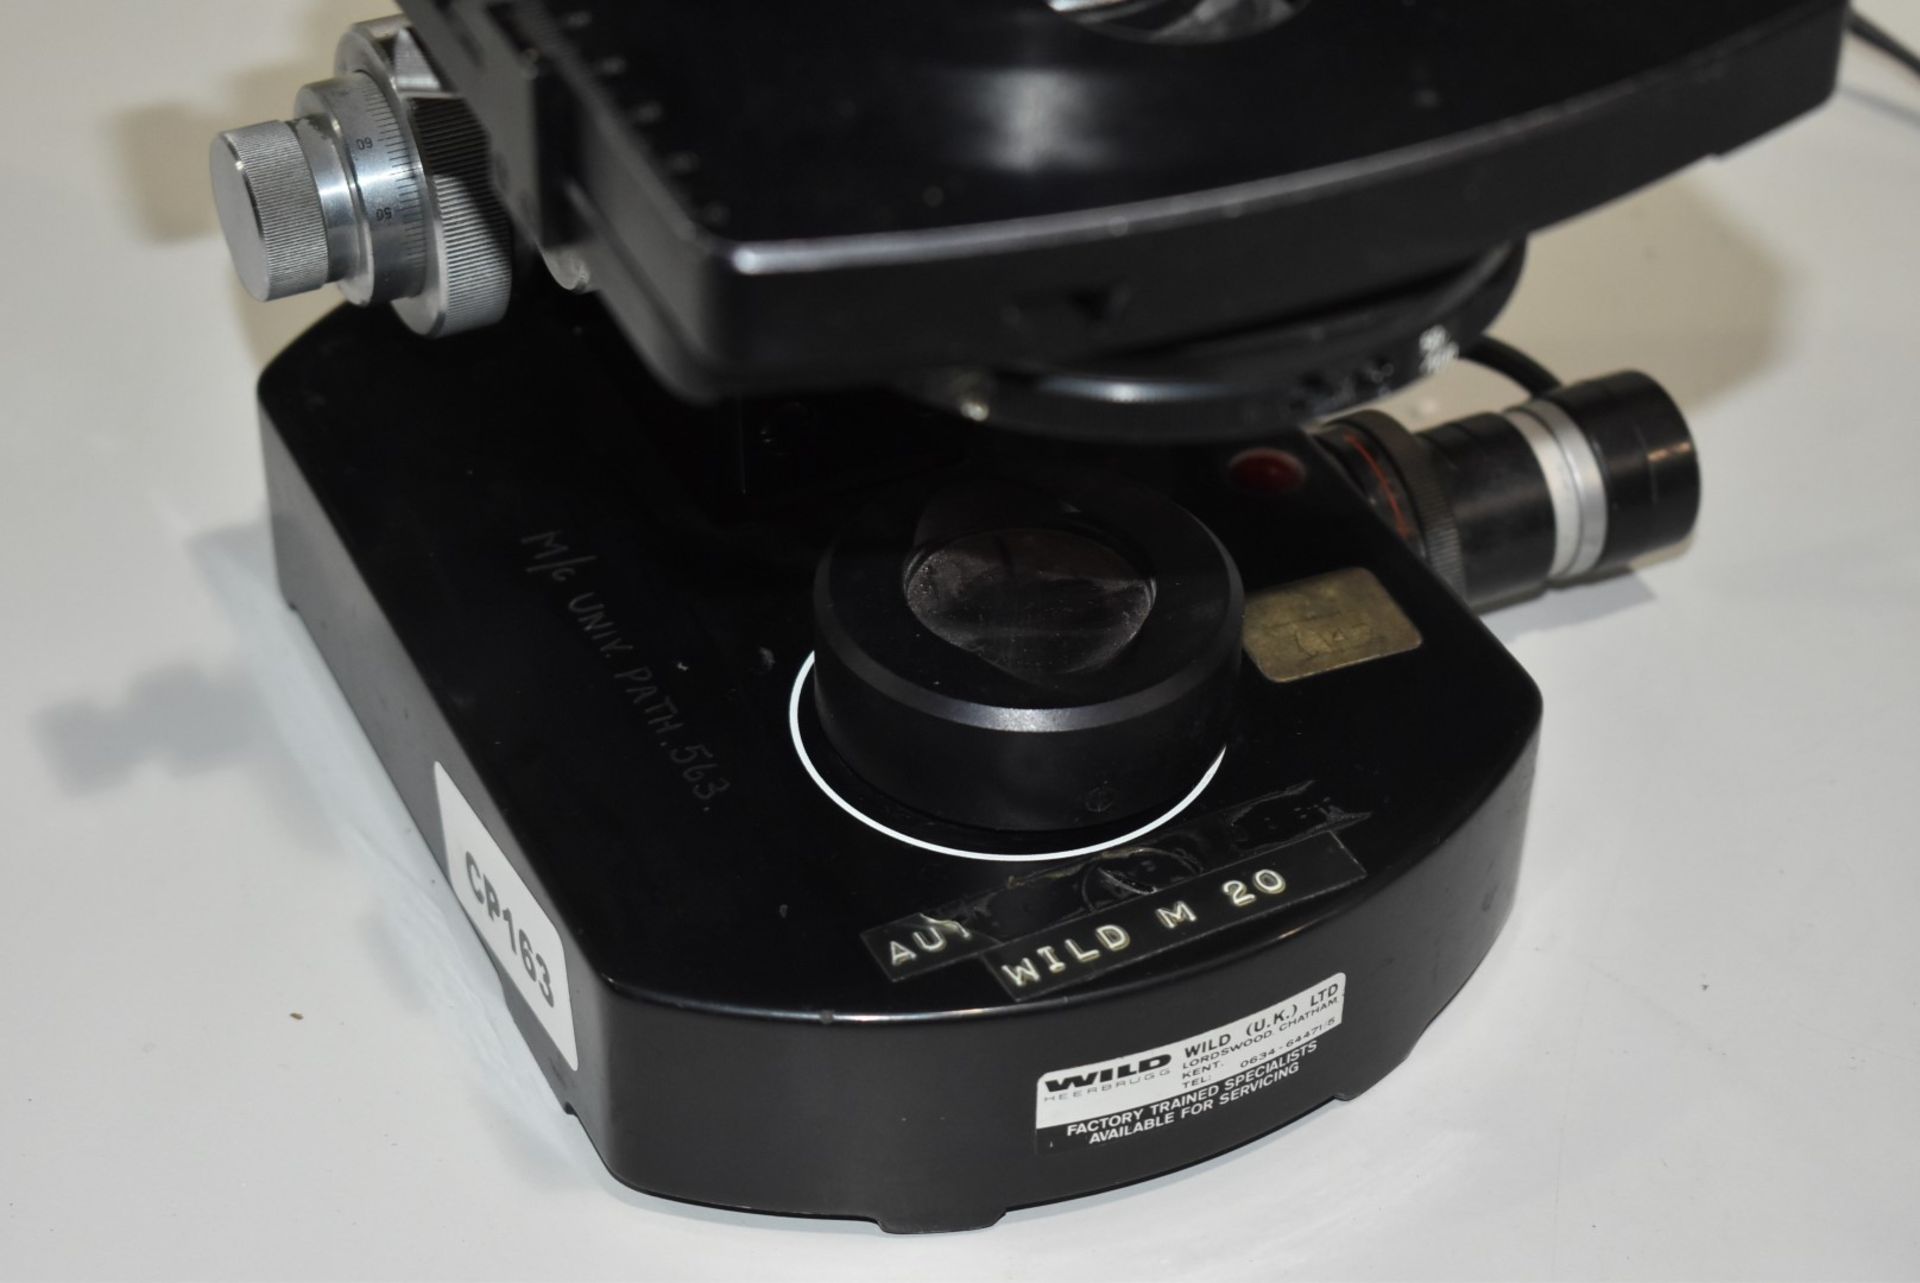 1 x Wild M20 Microscope - Image 2 of 9